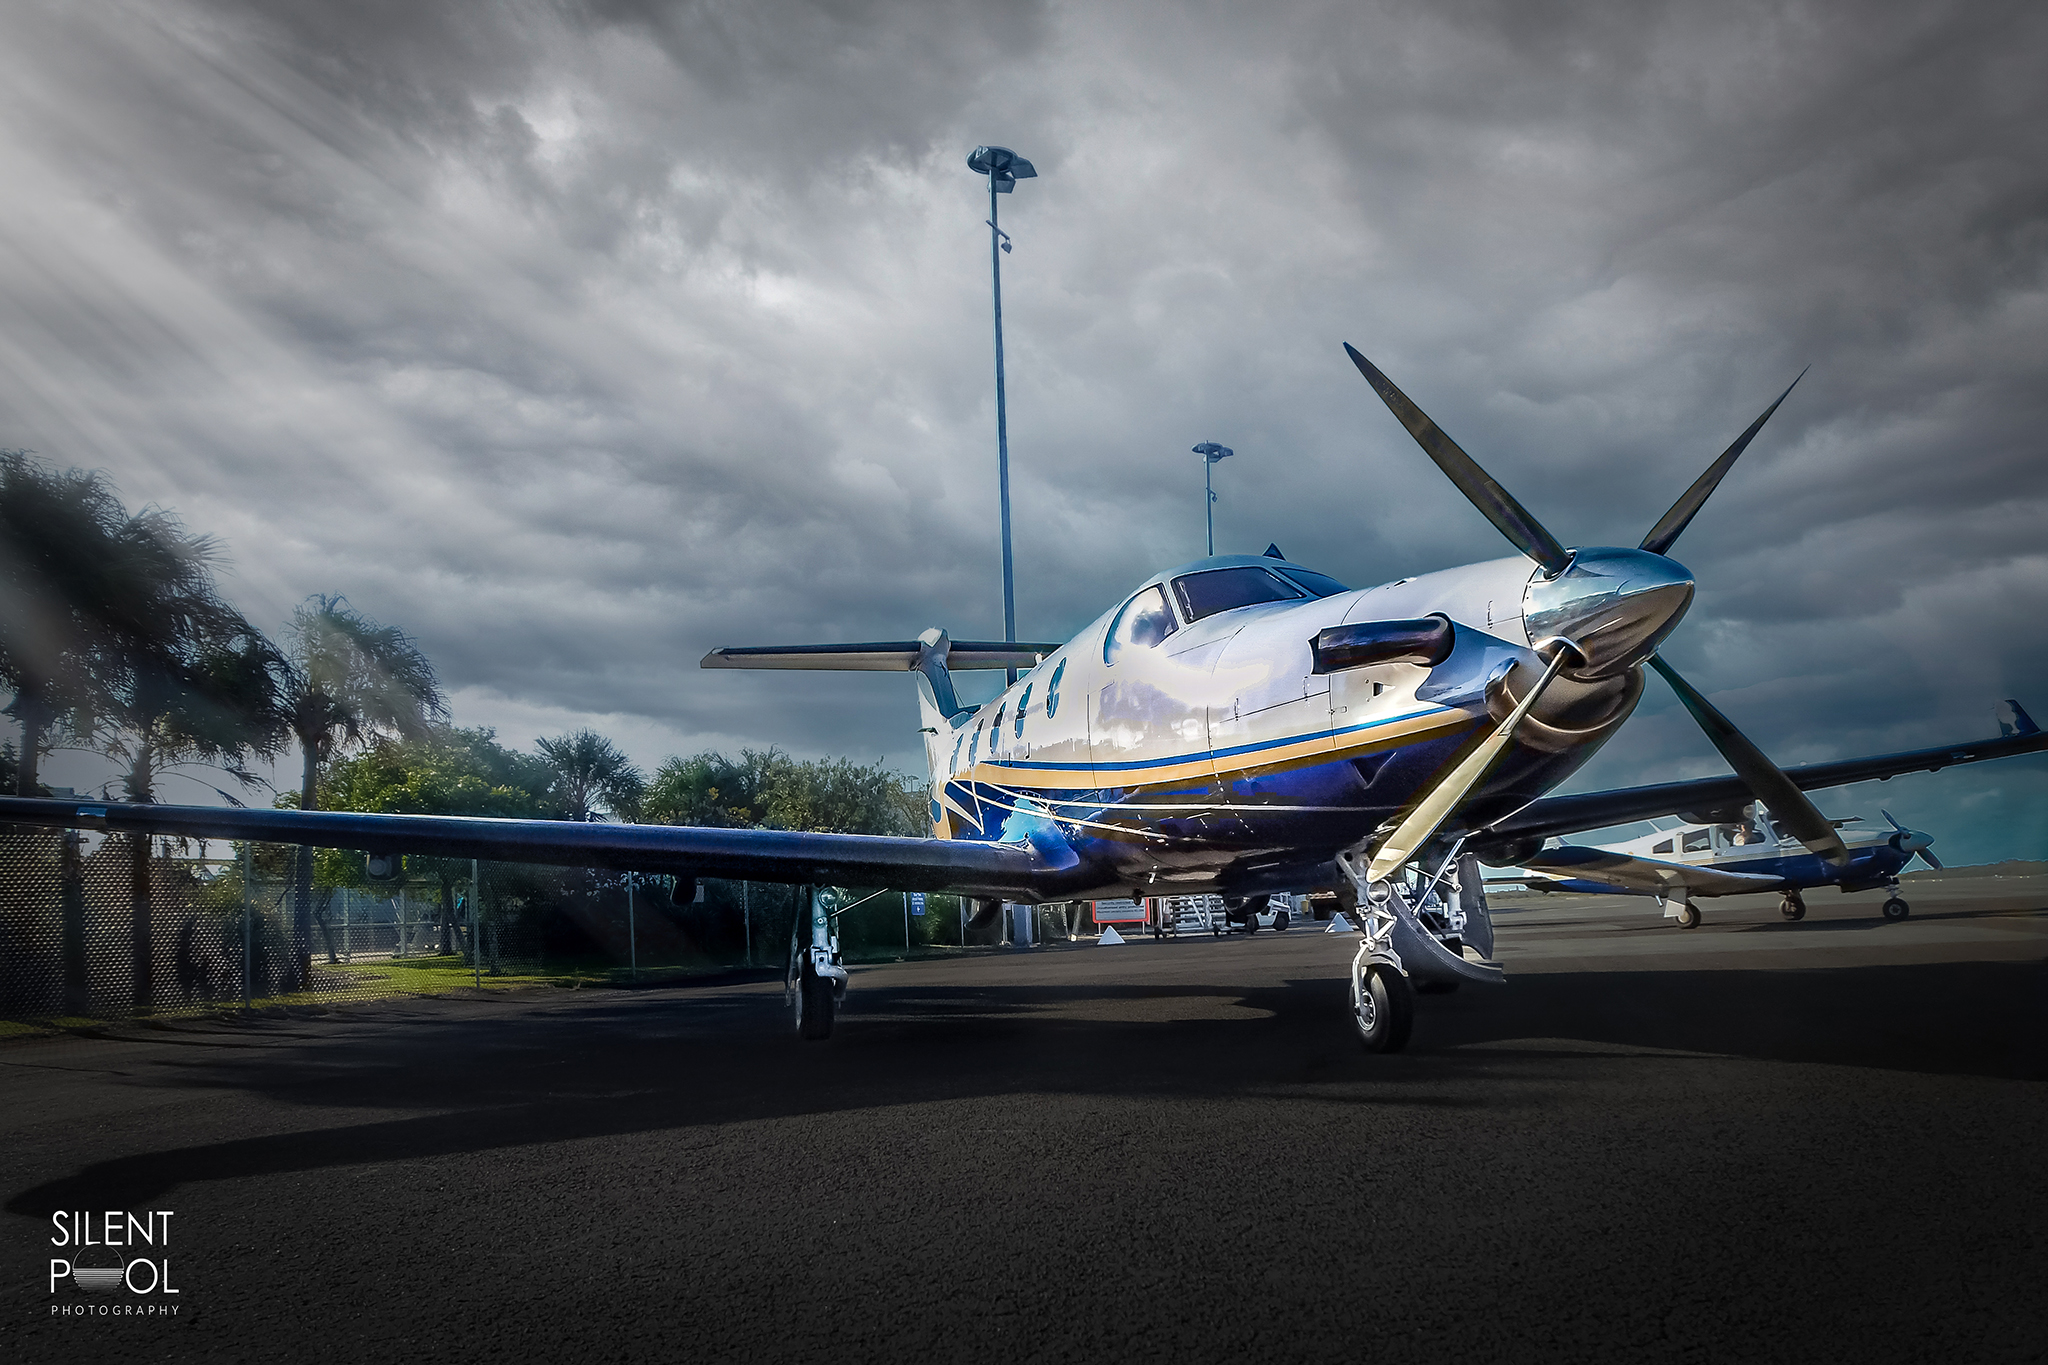 Pilatus Aircraft Airport Aviation Photography